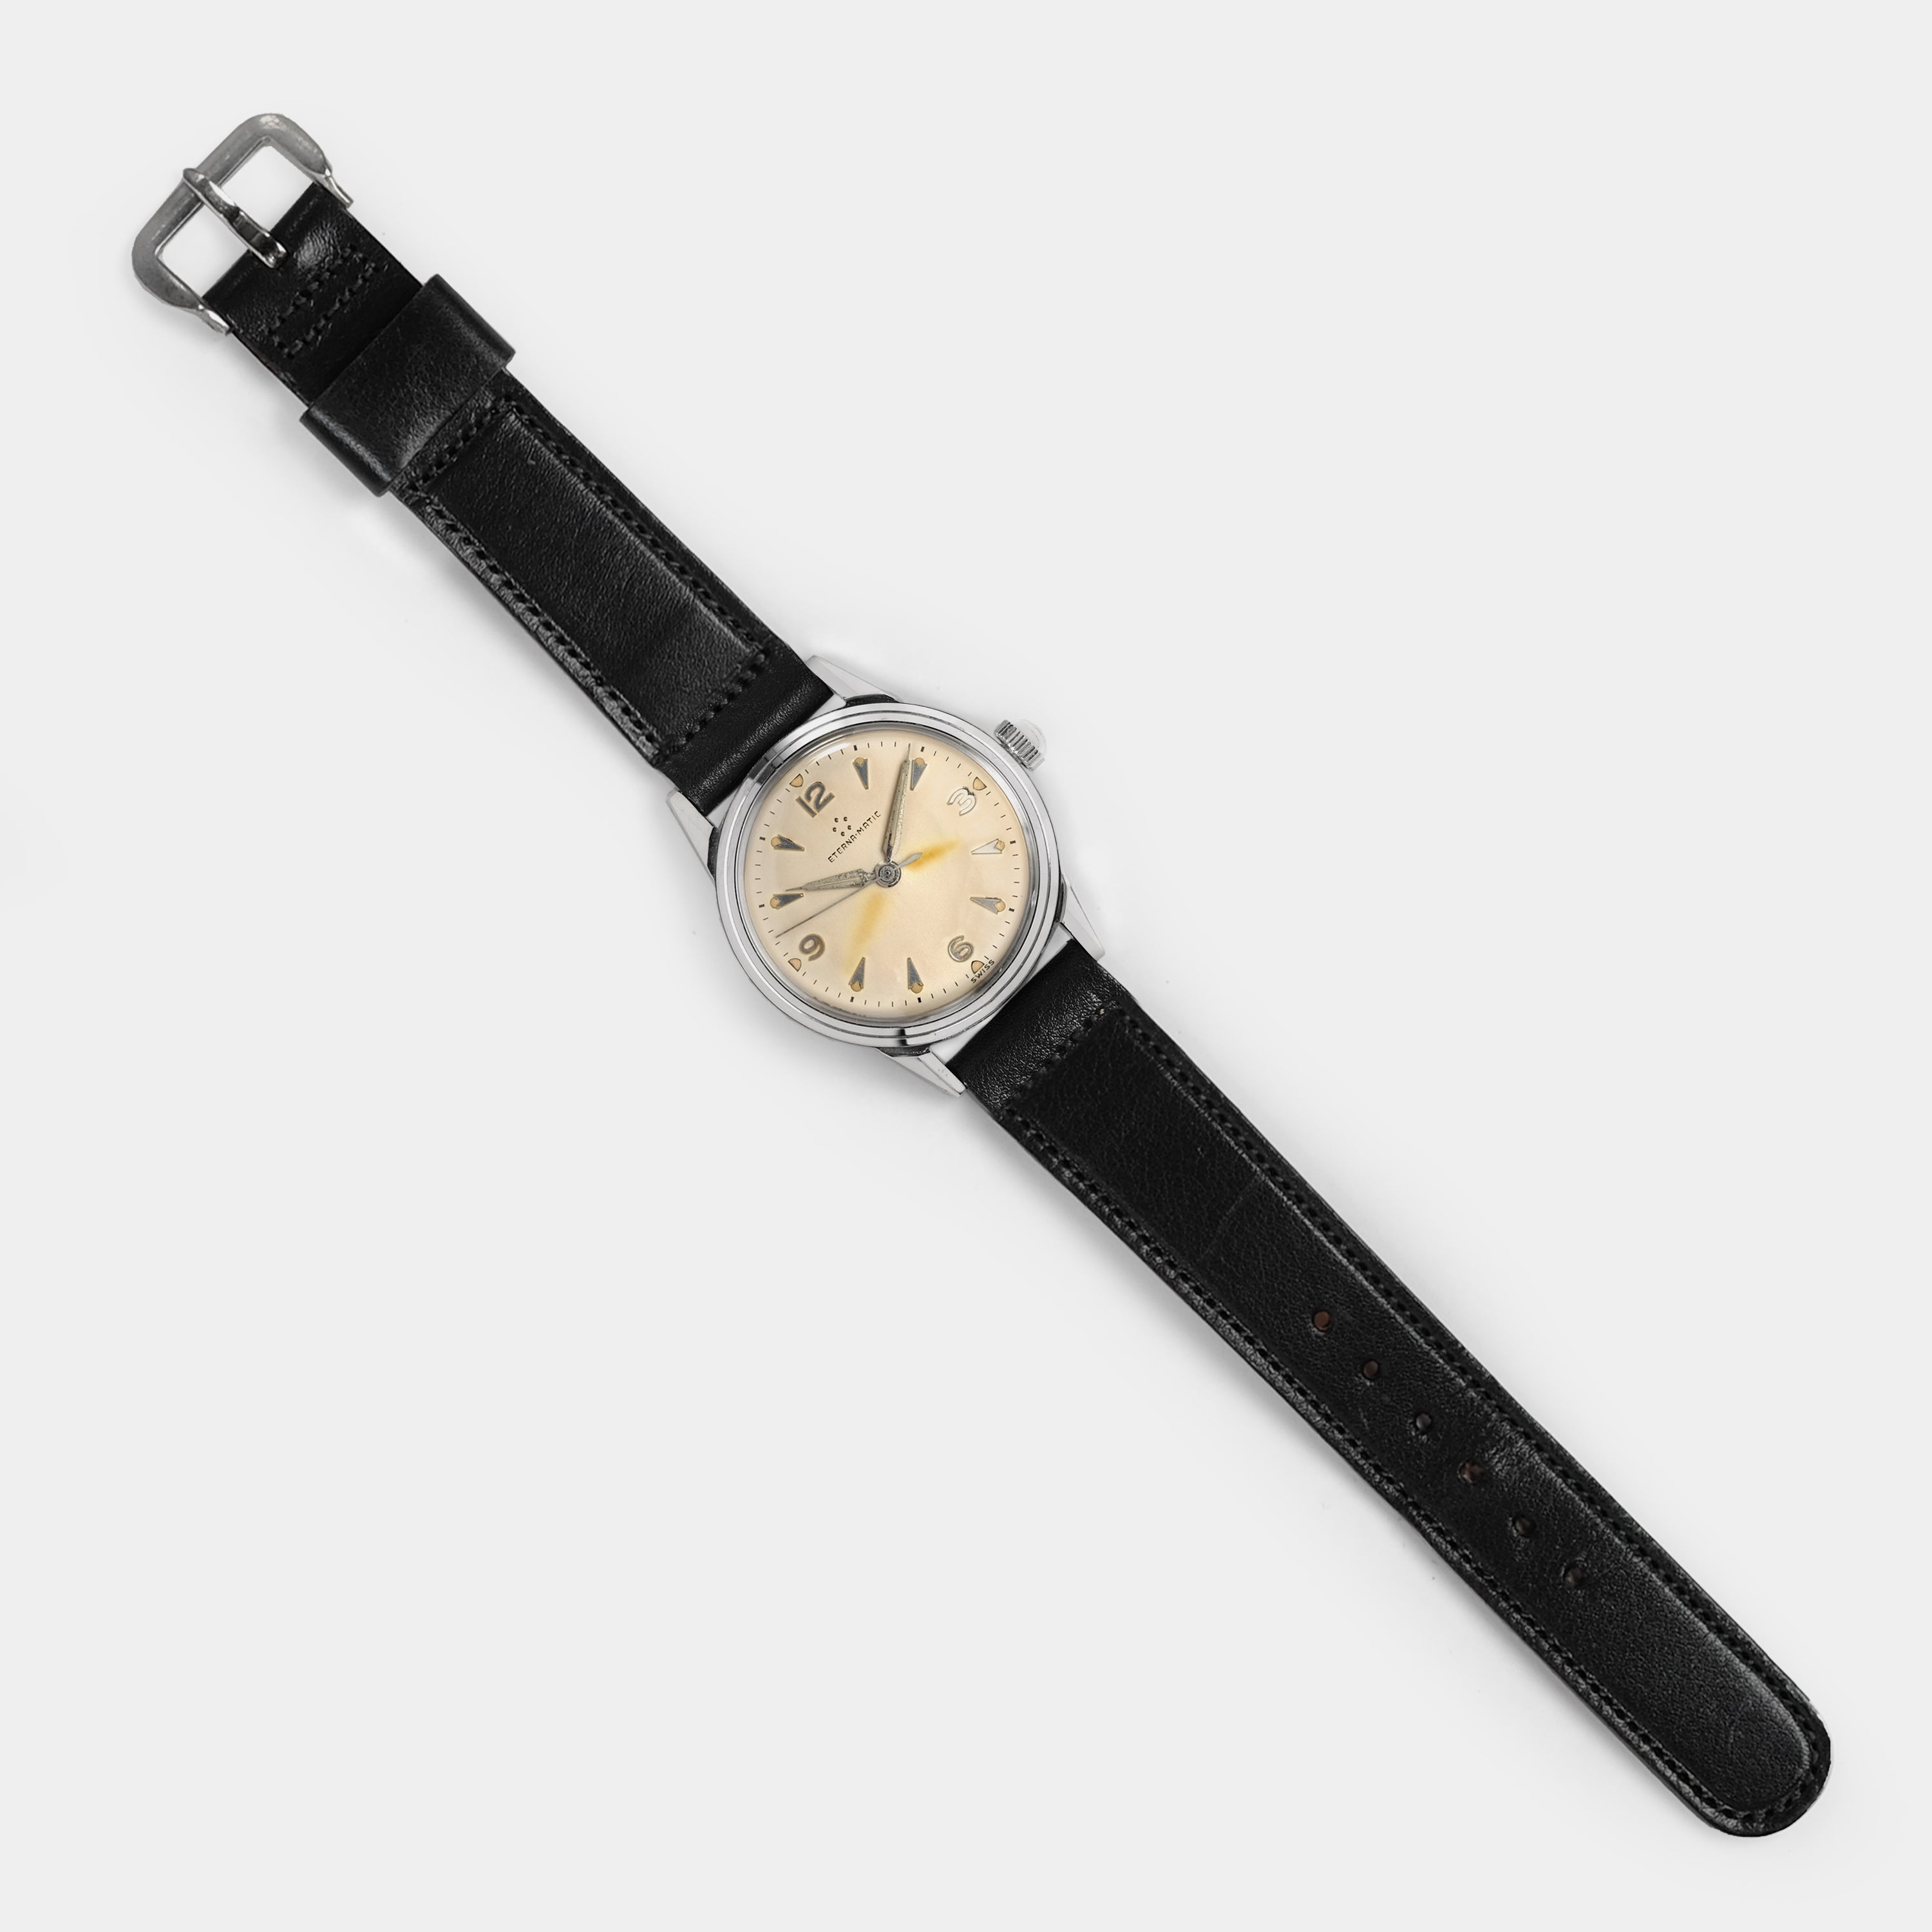 Eterna-Matic 1411U Circa 1953 Wristwatch